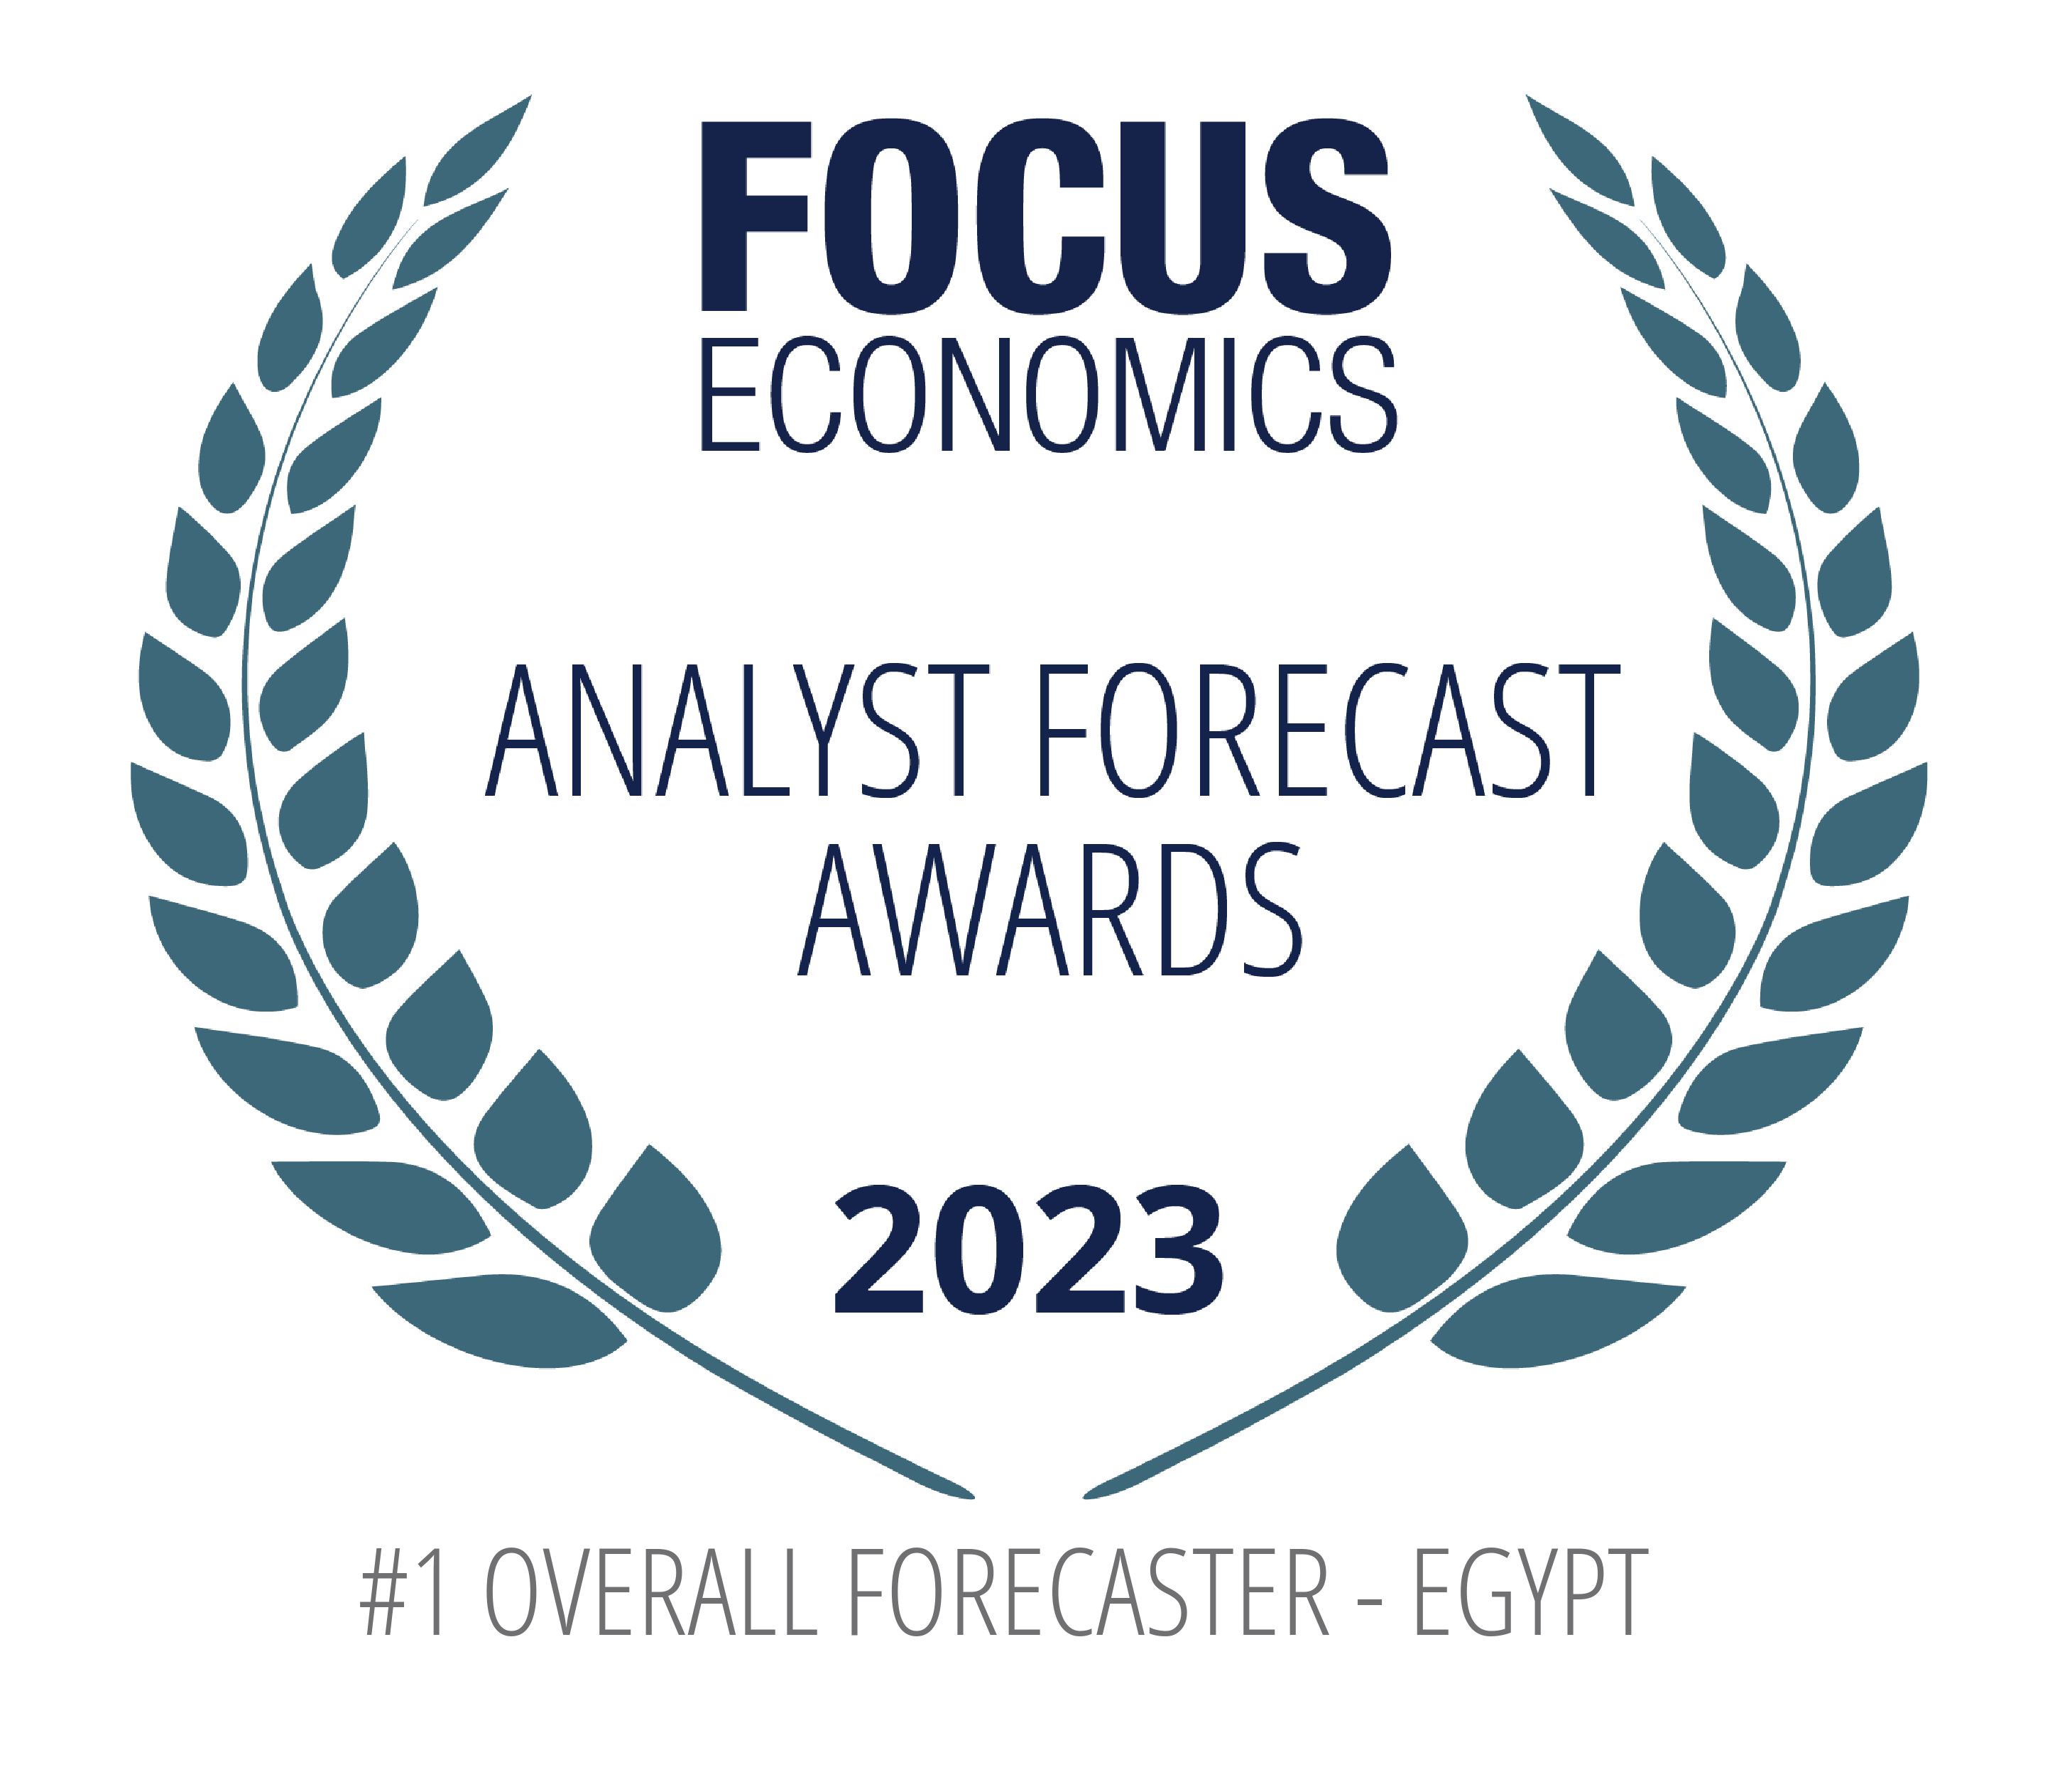 اتش سى تحصل على جائزة أفضل توقع اقتصادي شامل لمصر في عام 2023